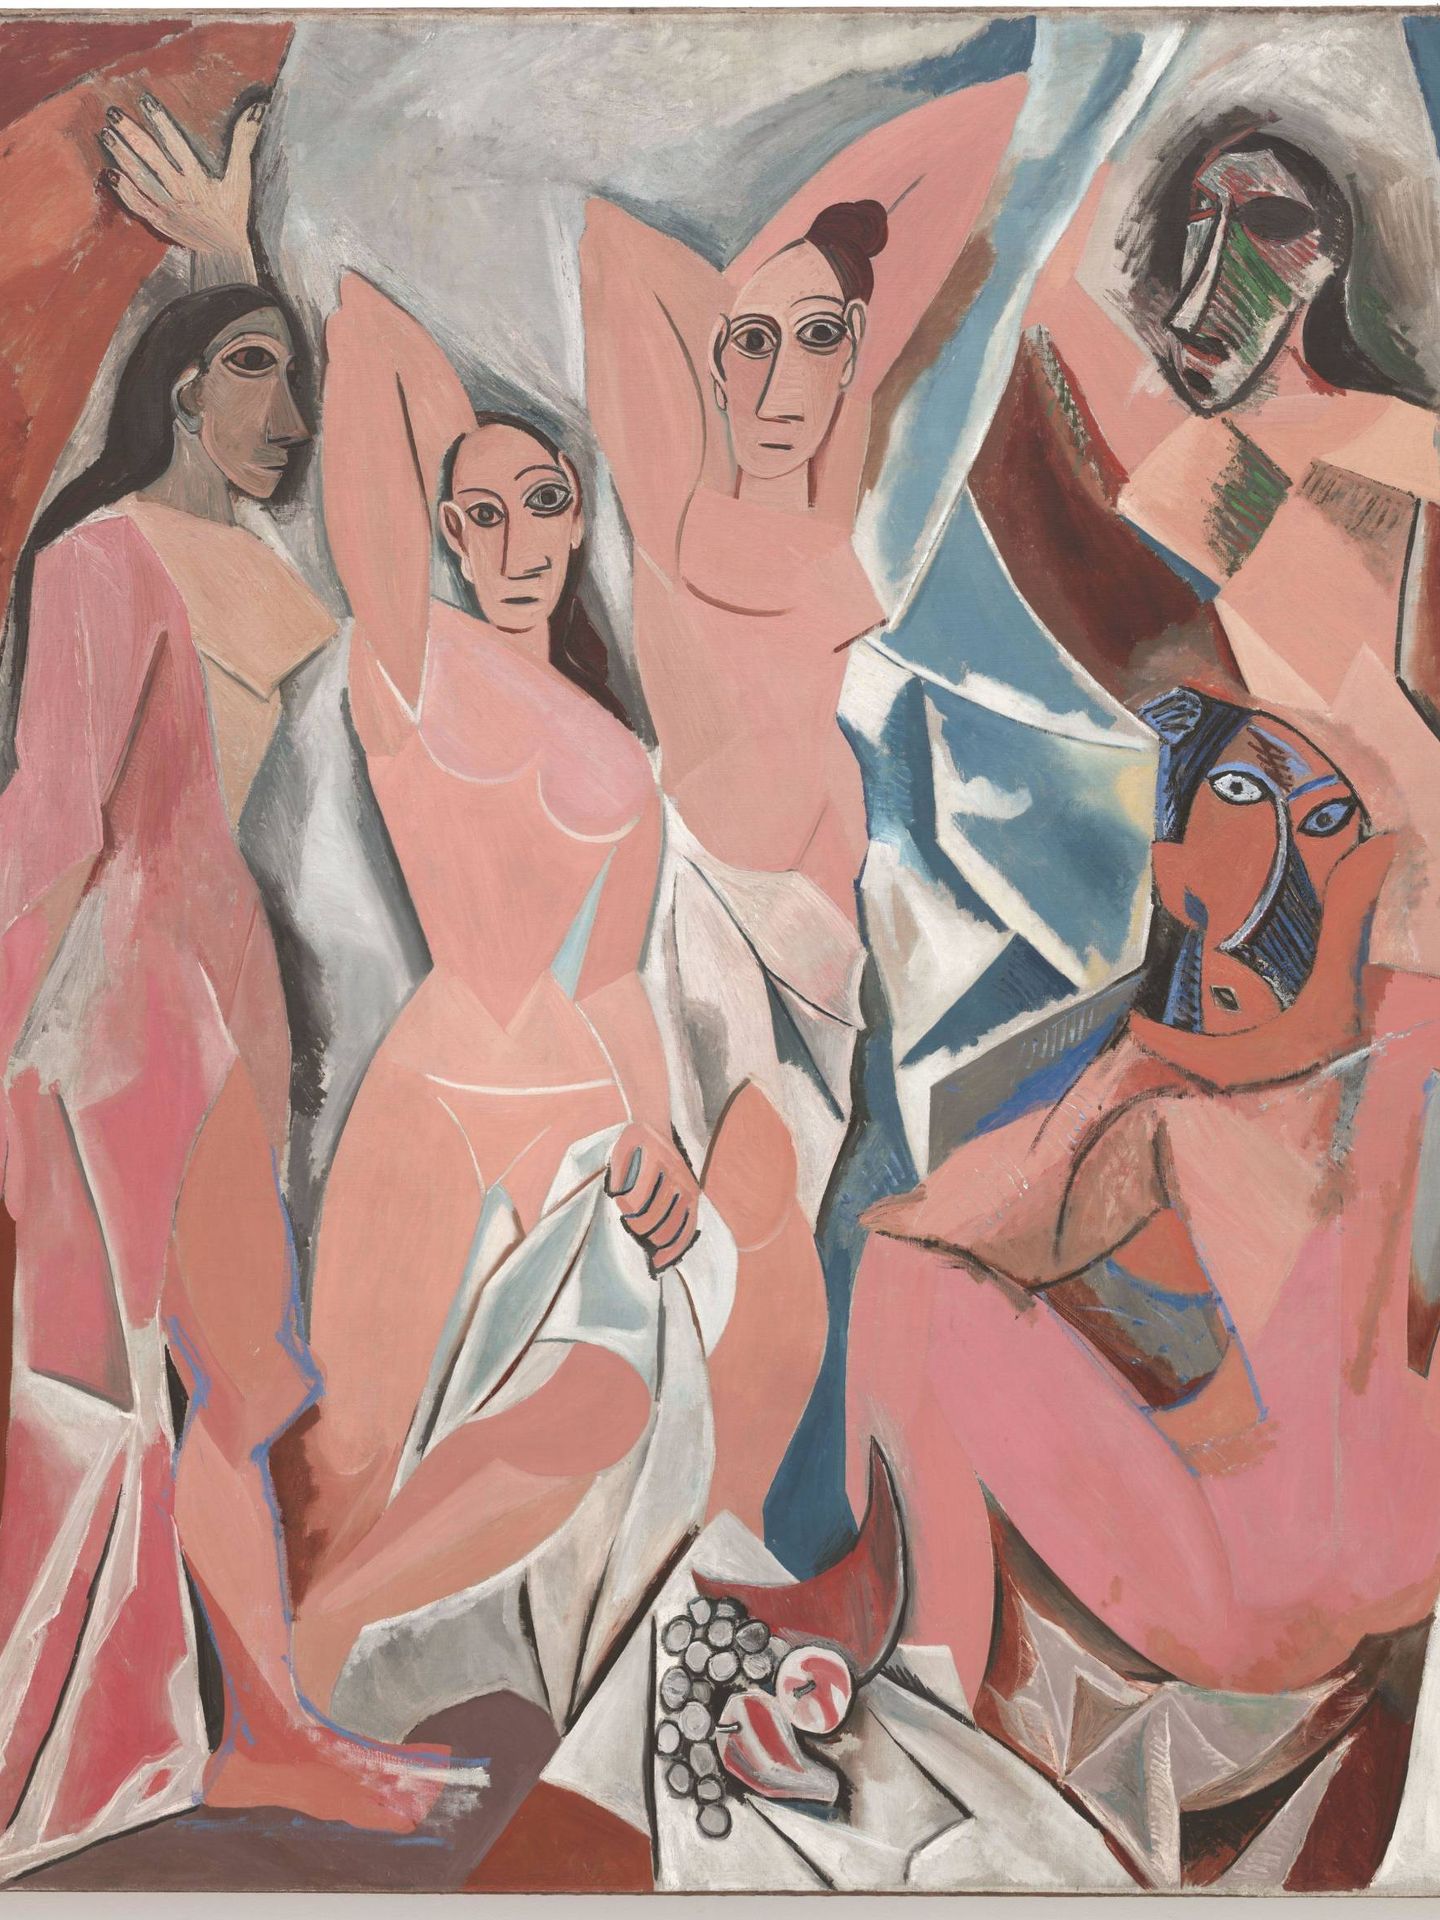 'Les Demoiselles d'Avignon', Pablo Picasso, 1907. MoMA.